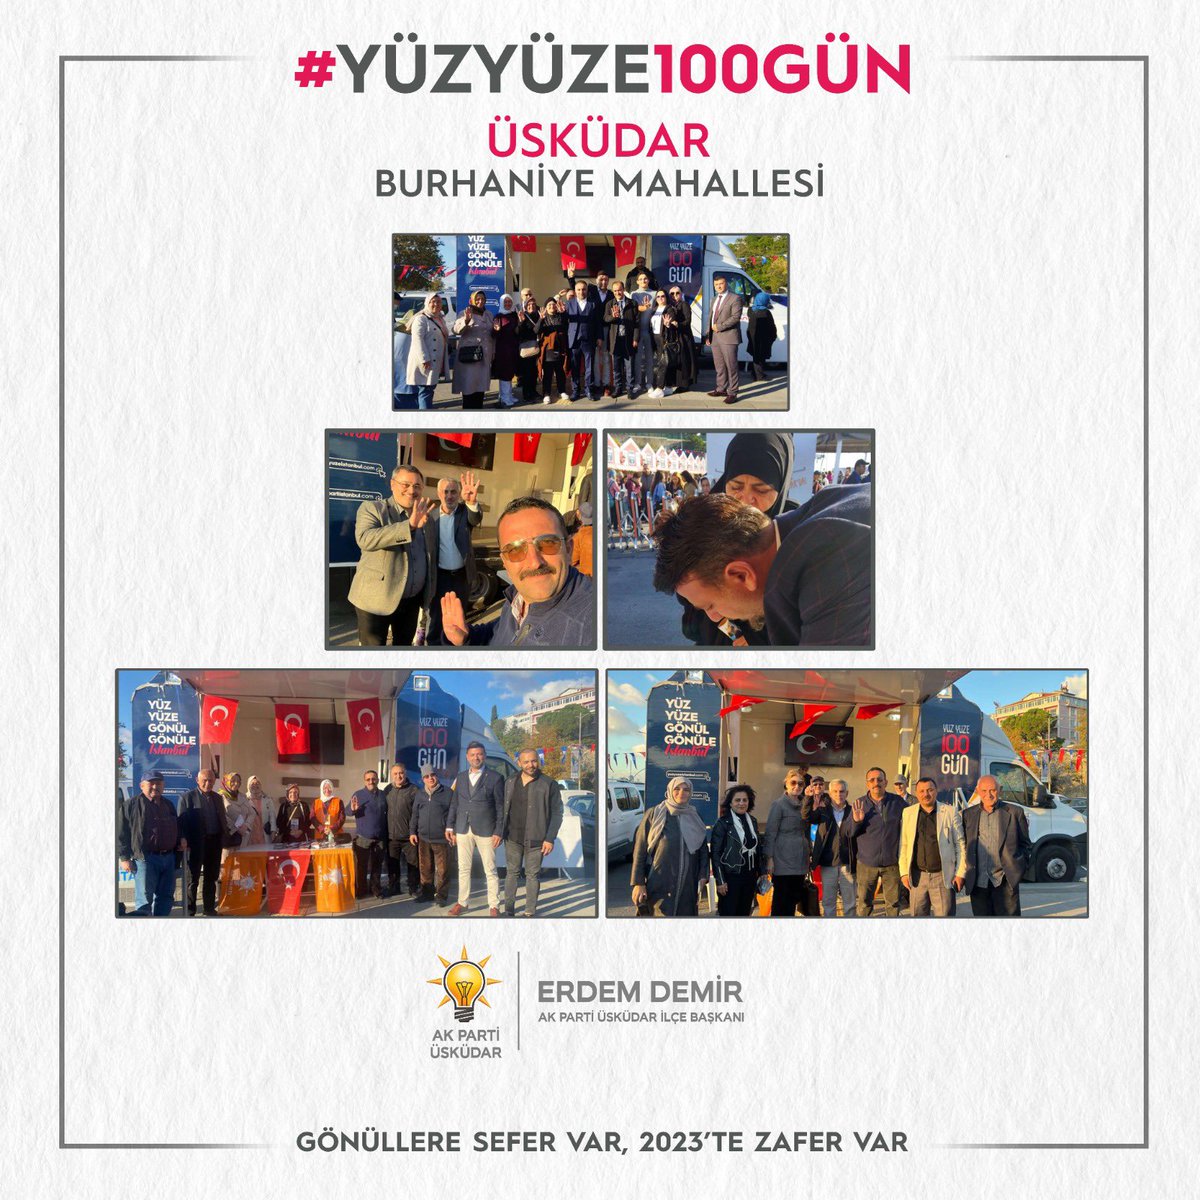 Üsküdar Belediyemizin düzenlediği Yöresel Lezzetler Festival alanındaki, 📍AK Noktamızda yeni üye kayıtlarımızı gerçekleştirdik. Emeği geçen teşkilat mensuplarımıza teşekkür ediyorum. #YüzYüze100Gün @osmannnurika